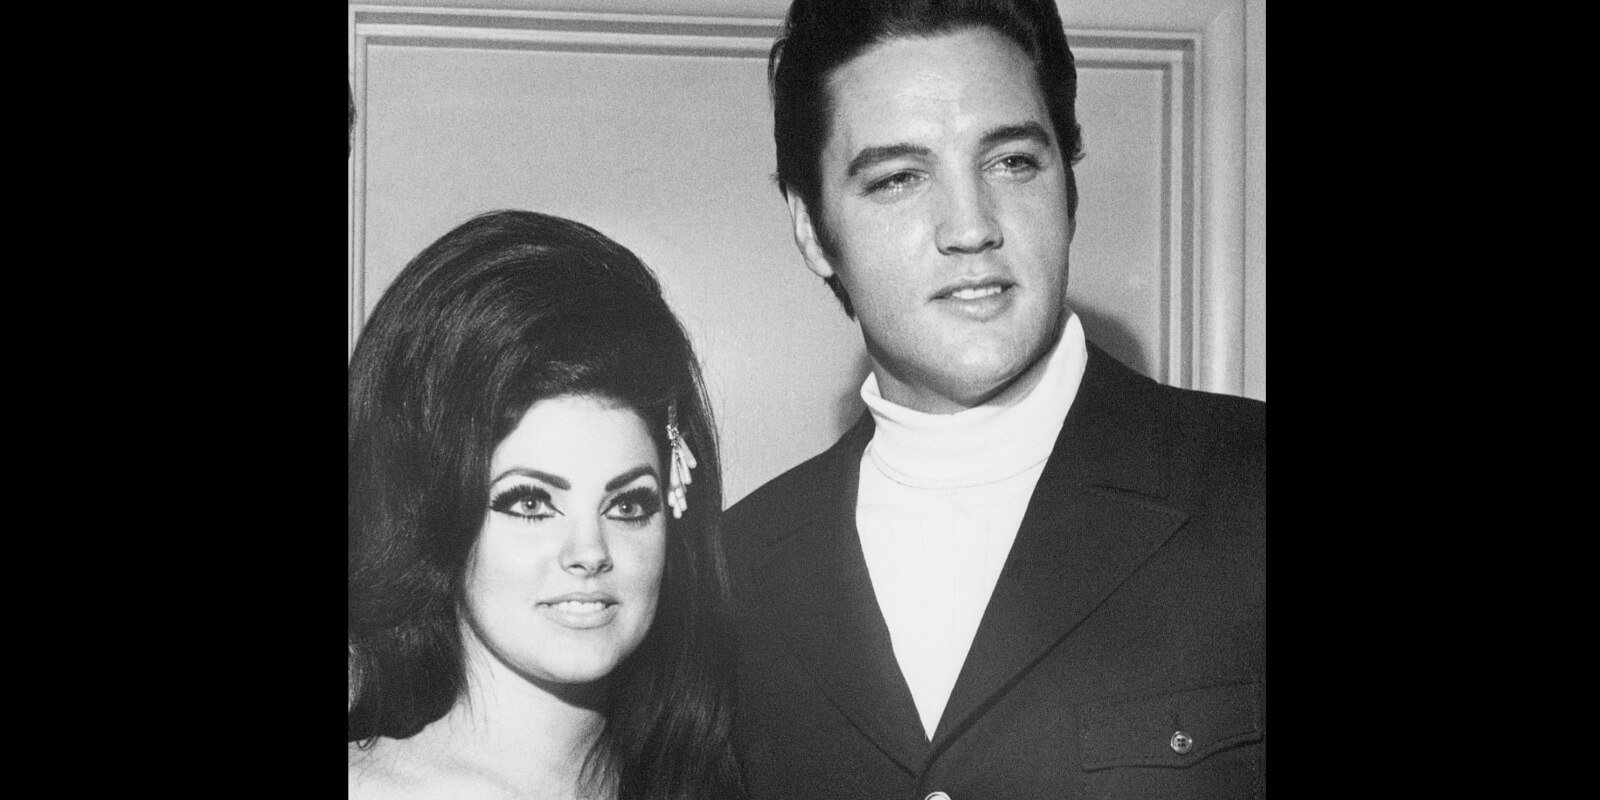 Priscilla Presley and Elvis Presley photographed in 1968 in Las Vegas, Nevada.